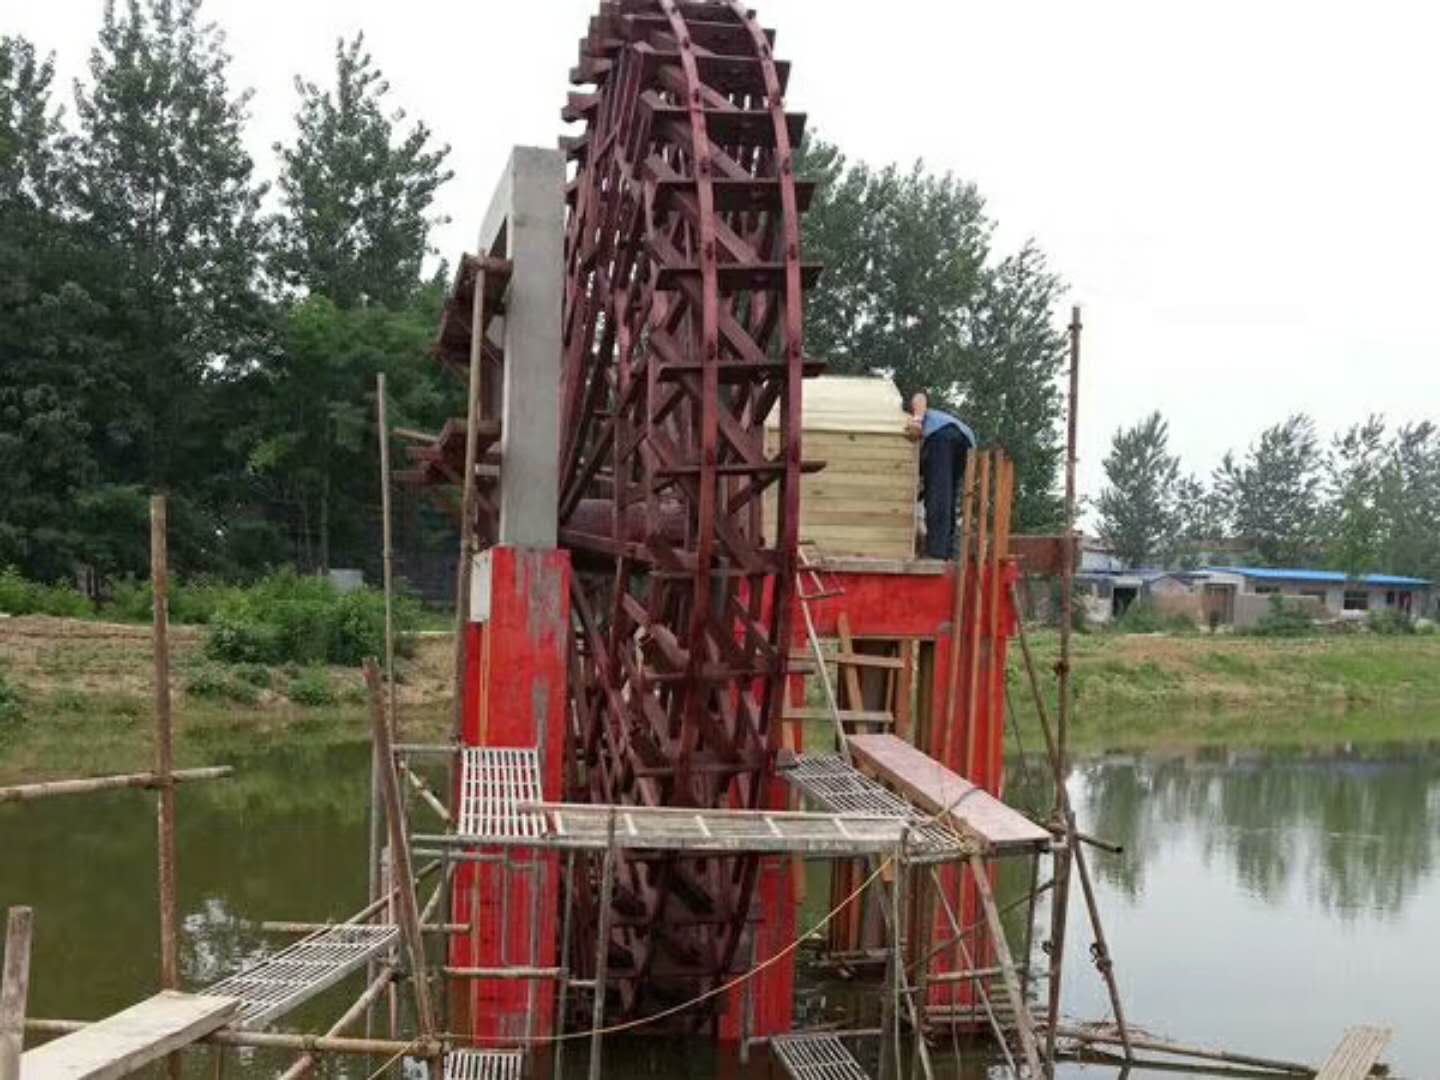 郑州荷兰风车景观水车蜂巢迷宫生产厂家红日